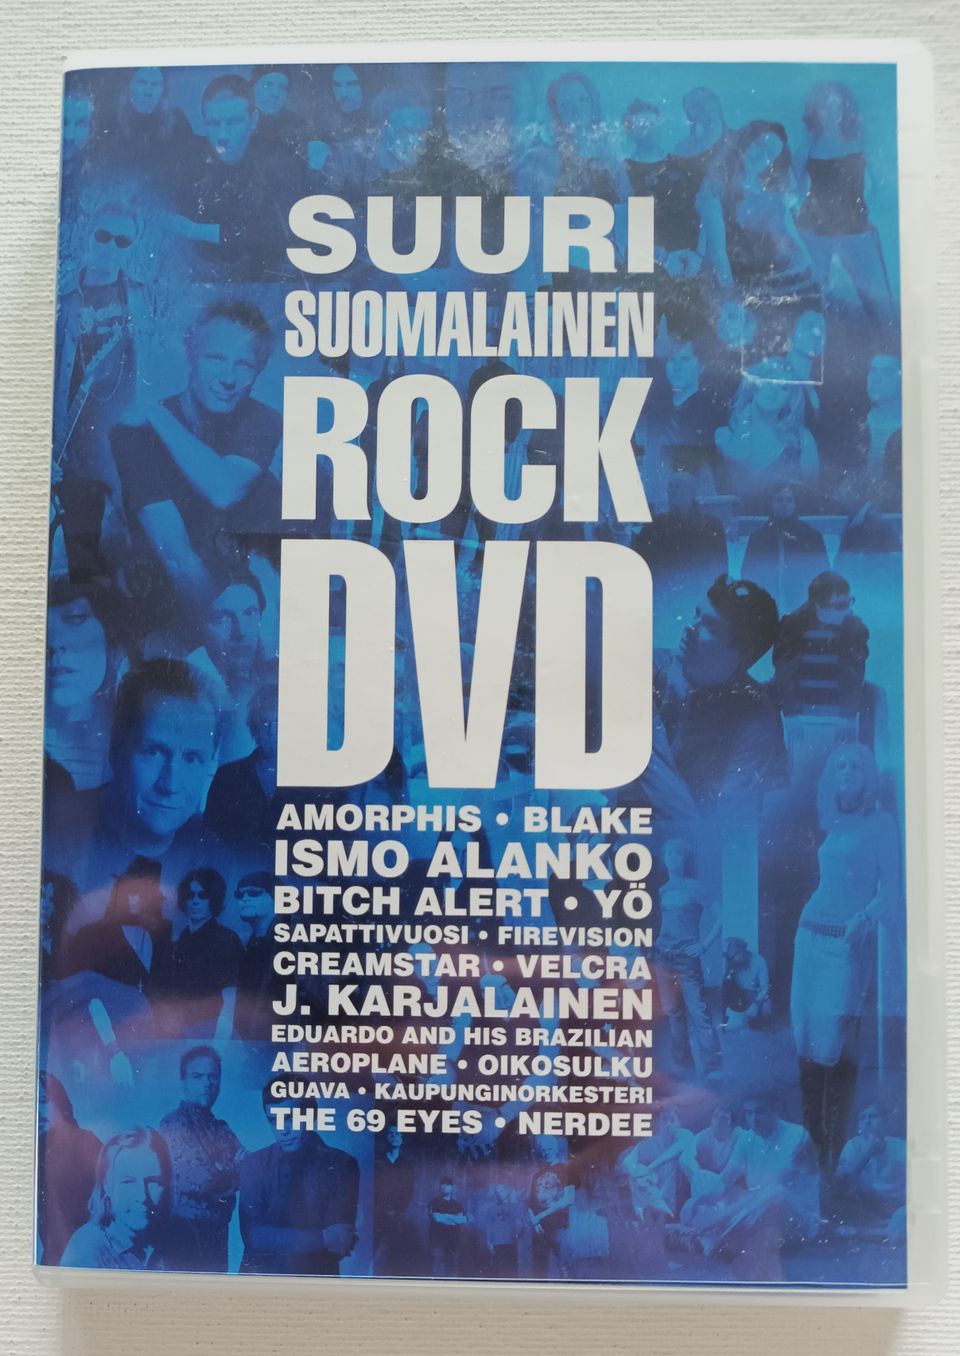 Suuri Suomalainen Rock DVD